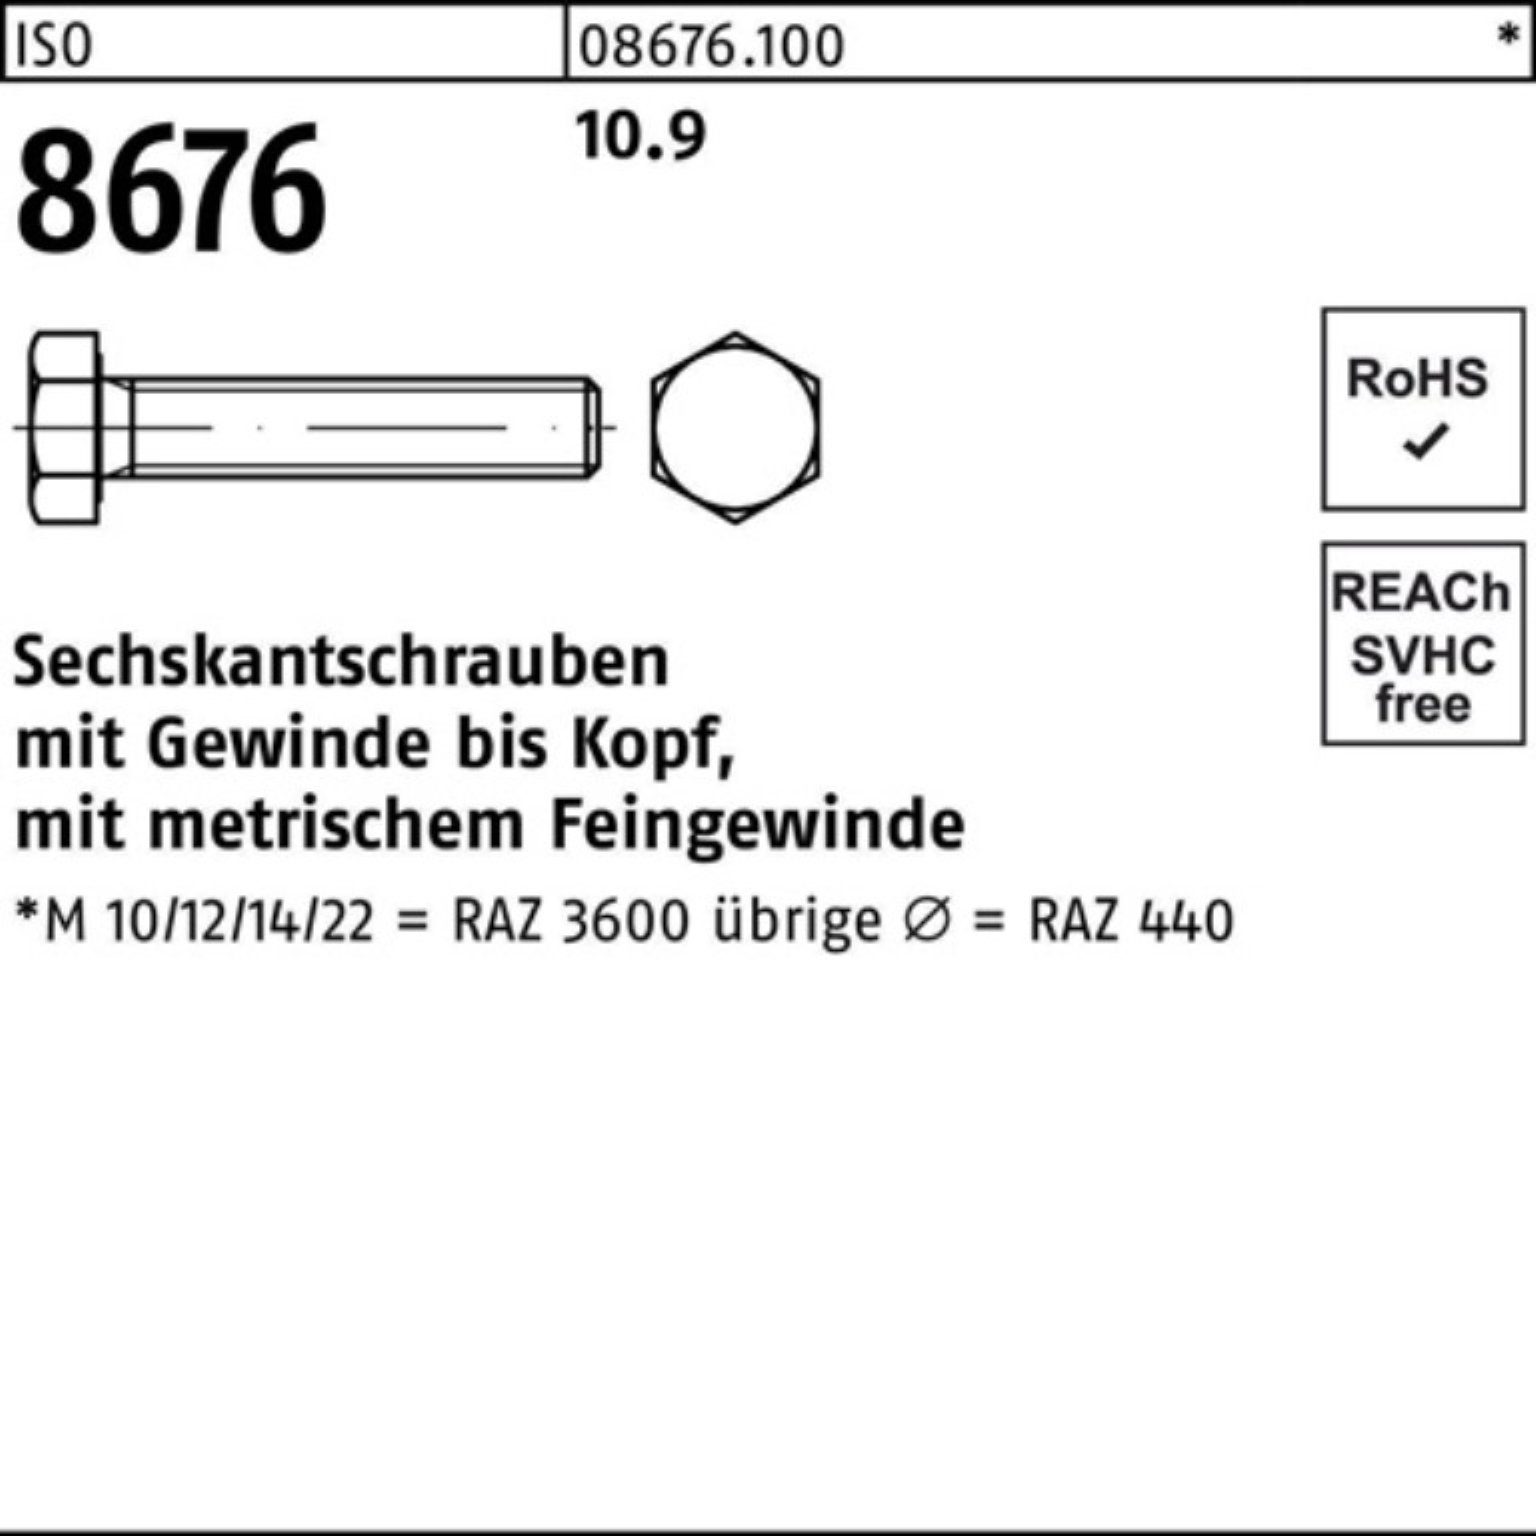 Reyher Sechskantschraube 100er Pack VG 10.9 IS Sechskantschraube M14x1,5x 8676 65 Stück ISO 50